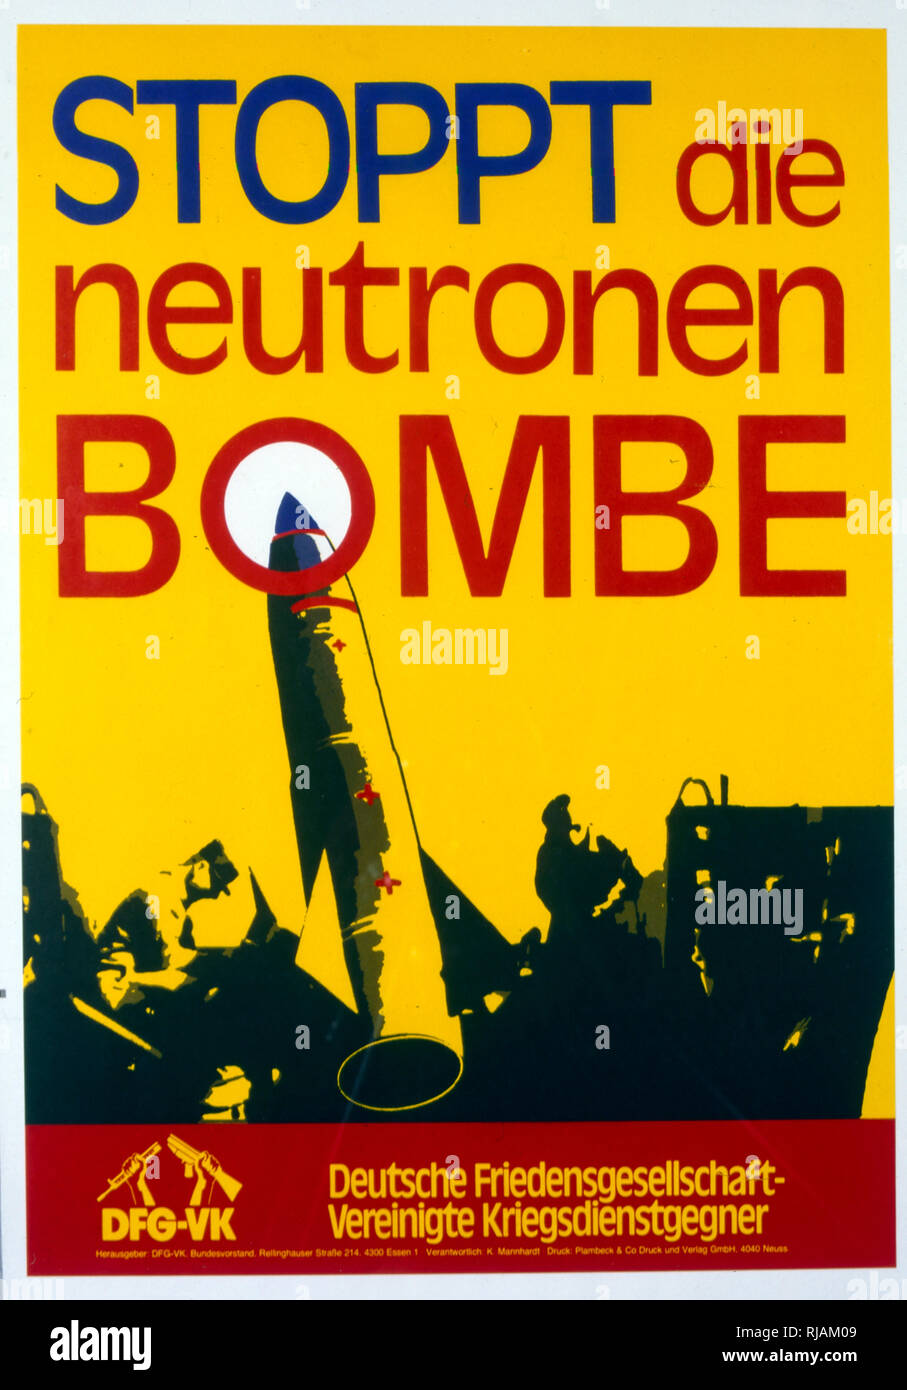 Neutronen Stoppt die bombe (Arrêter la bombe à neutrons) affiche anti-nucléaire, Allemagne 1983 Banque D'Images